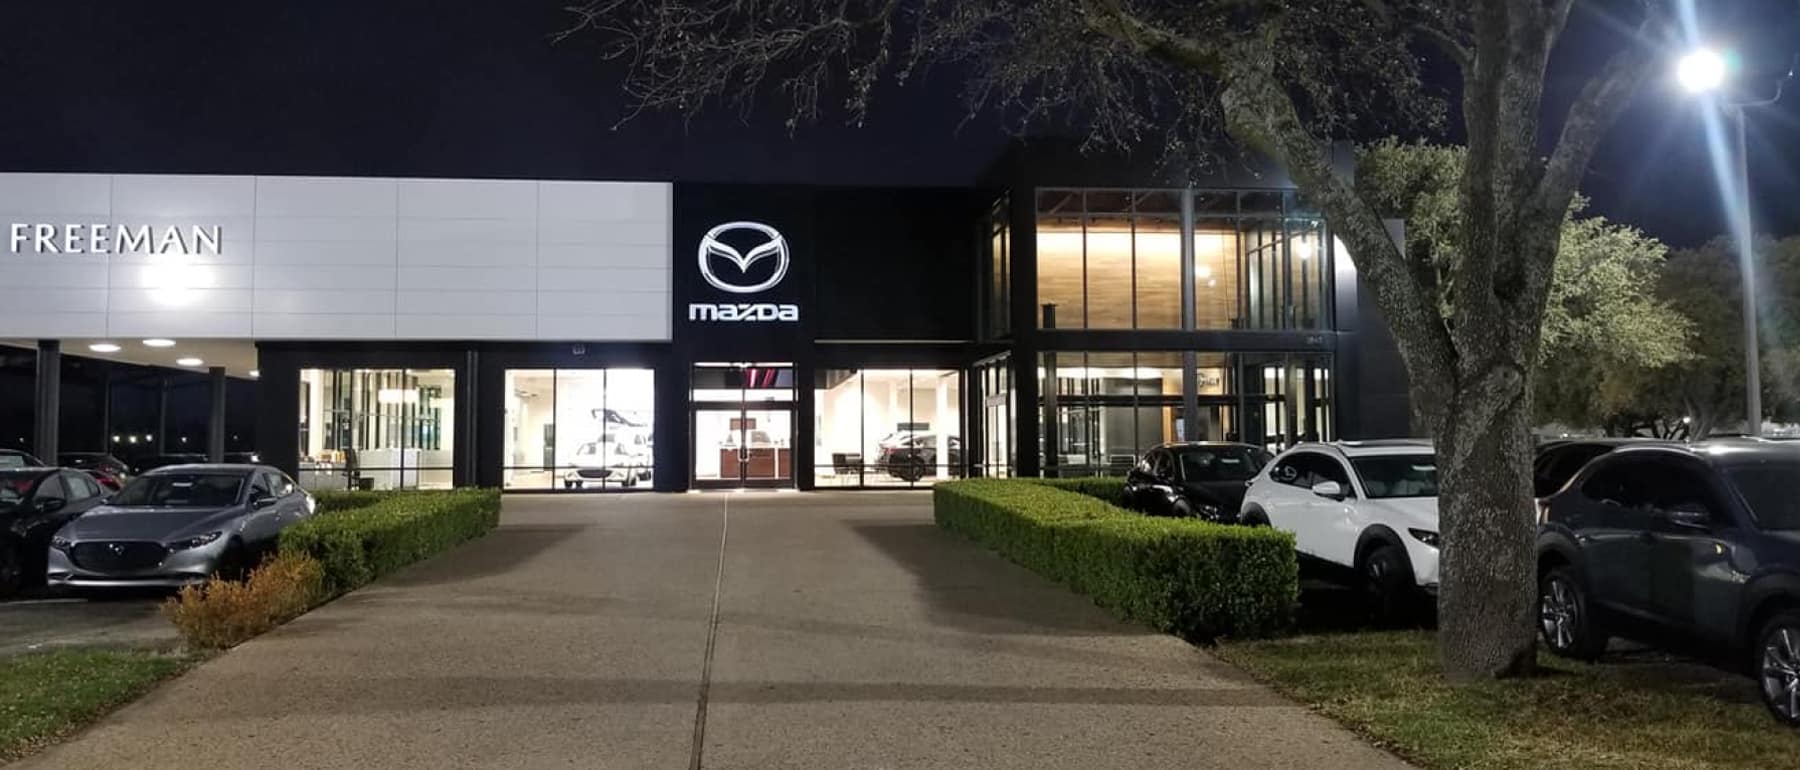 Mazda dealership